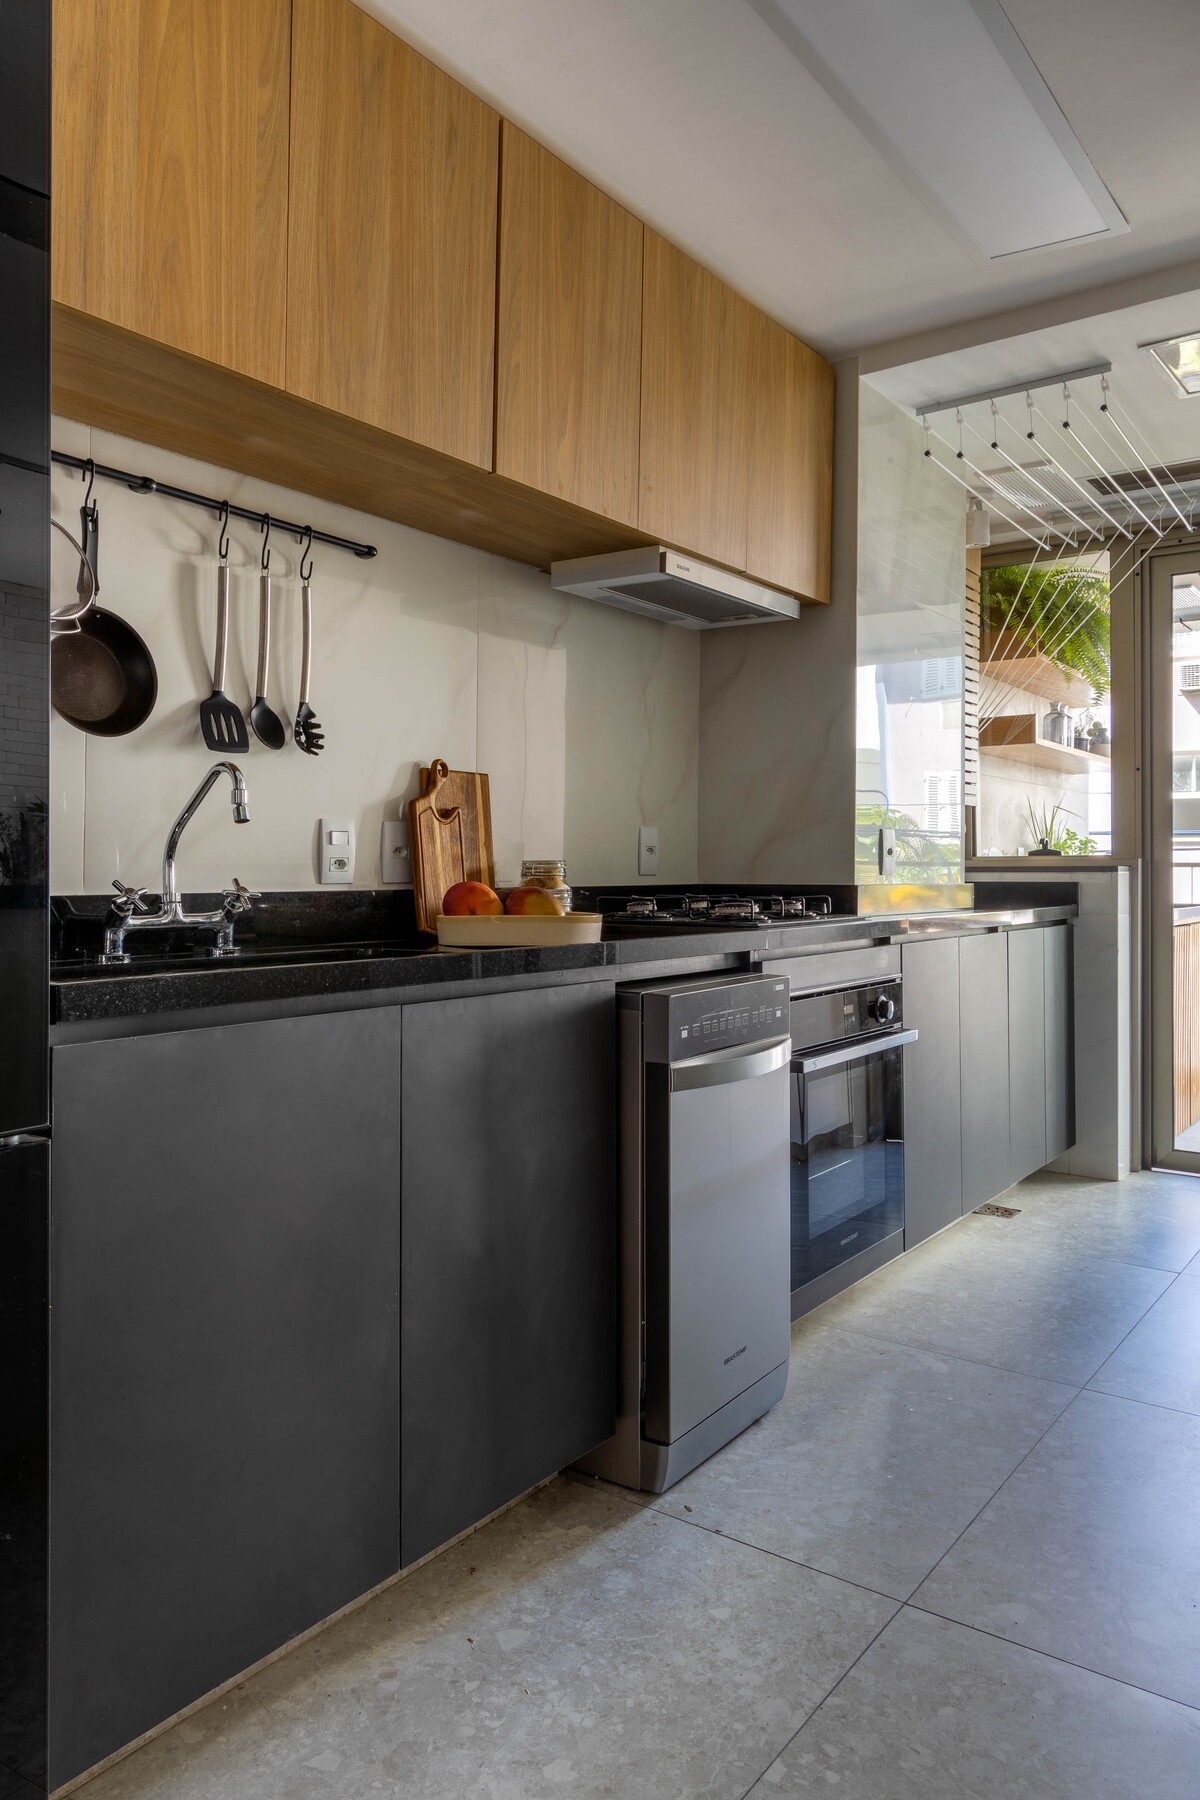 COZINHA | A cozinha tem abertura para a varanda e para a sala de estar. Um painel de freijó permite fechar a cozinha para dar privacidade (Foto: André Nazareth / Divulgação)